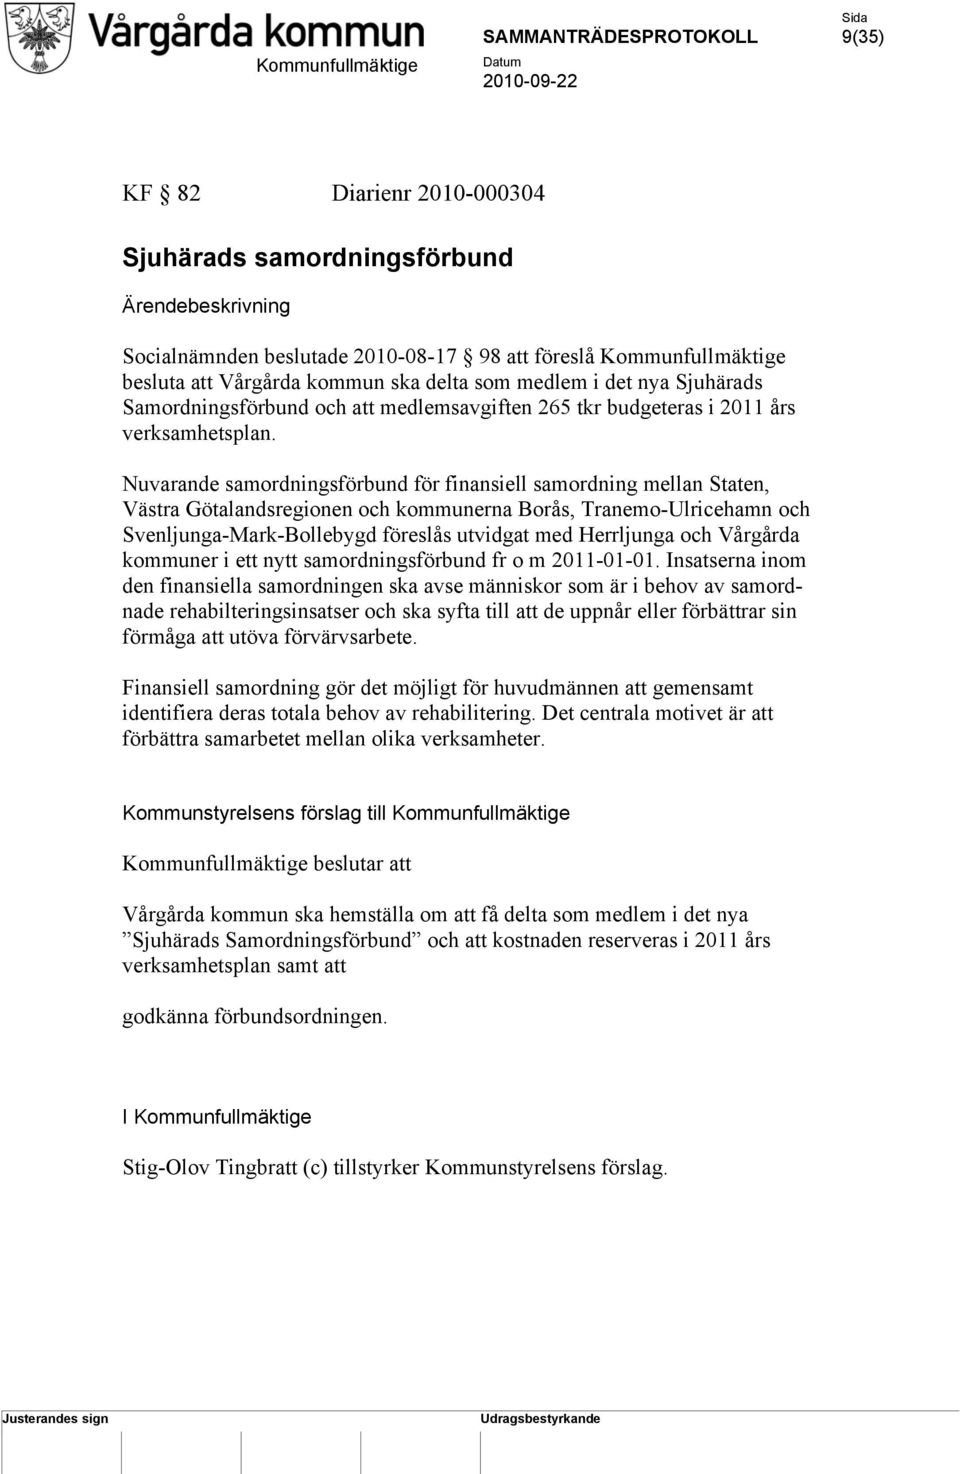 Nuvarande samordningsförbund för finansiell samordning mellan Staten, Västra Götalandsregionen och kommunerna Borås, Tranemo-Ulricehamn och Svenljunga-Mark-Bollebygd föreslås utvidgat med Herrljunga